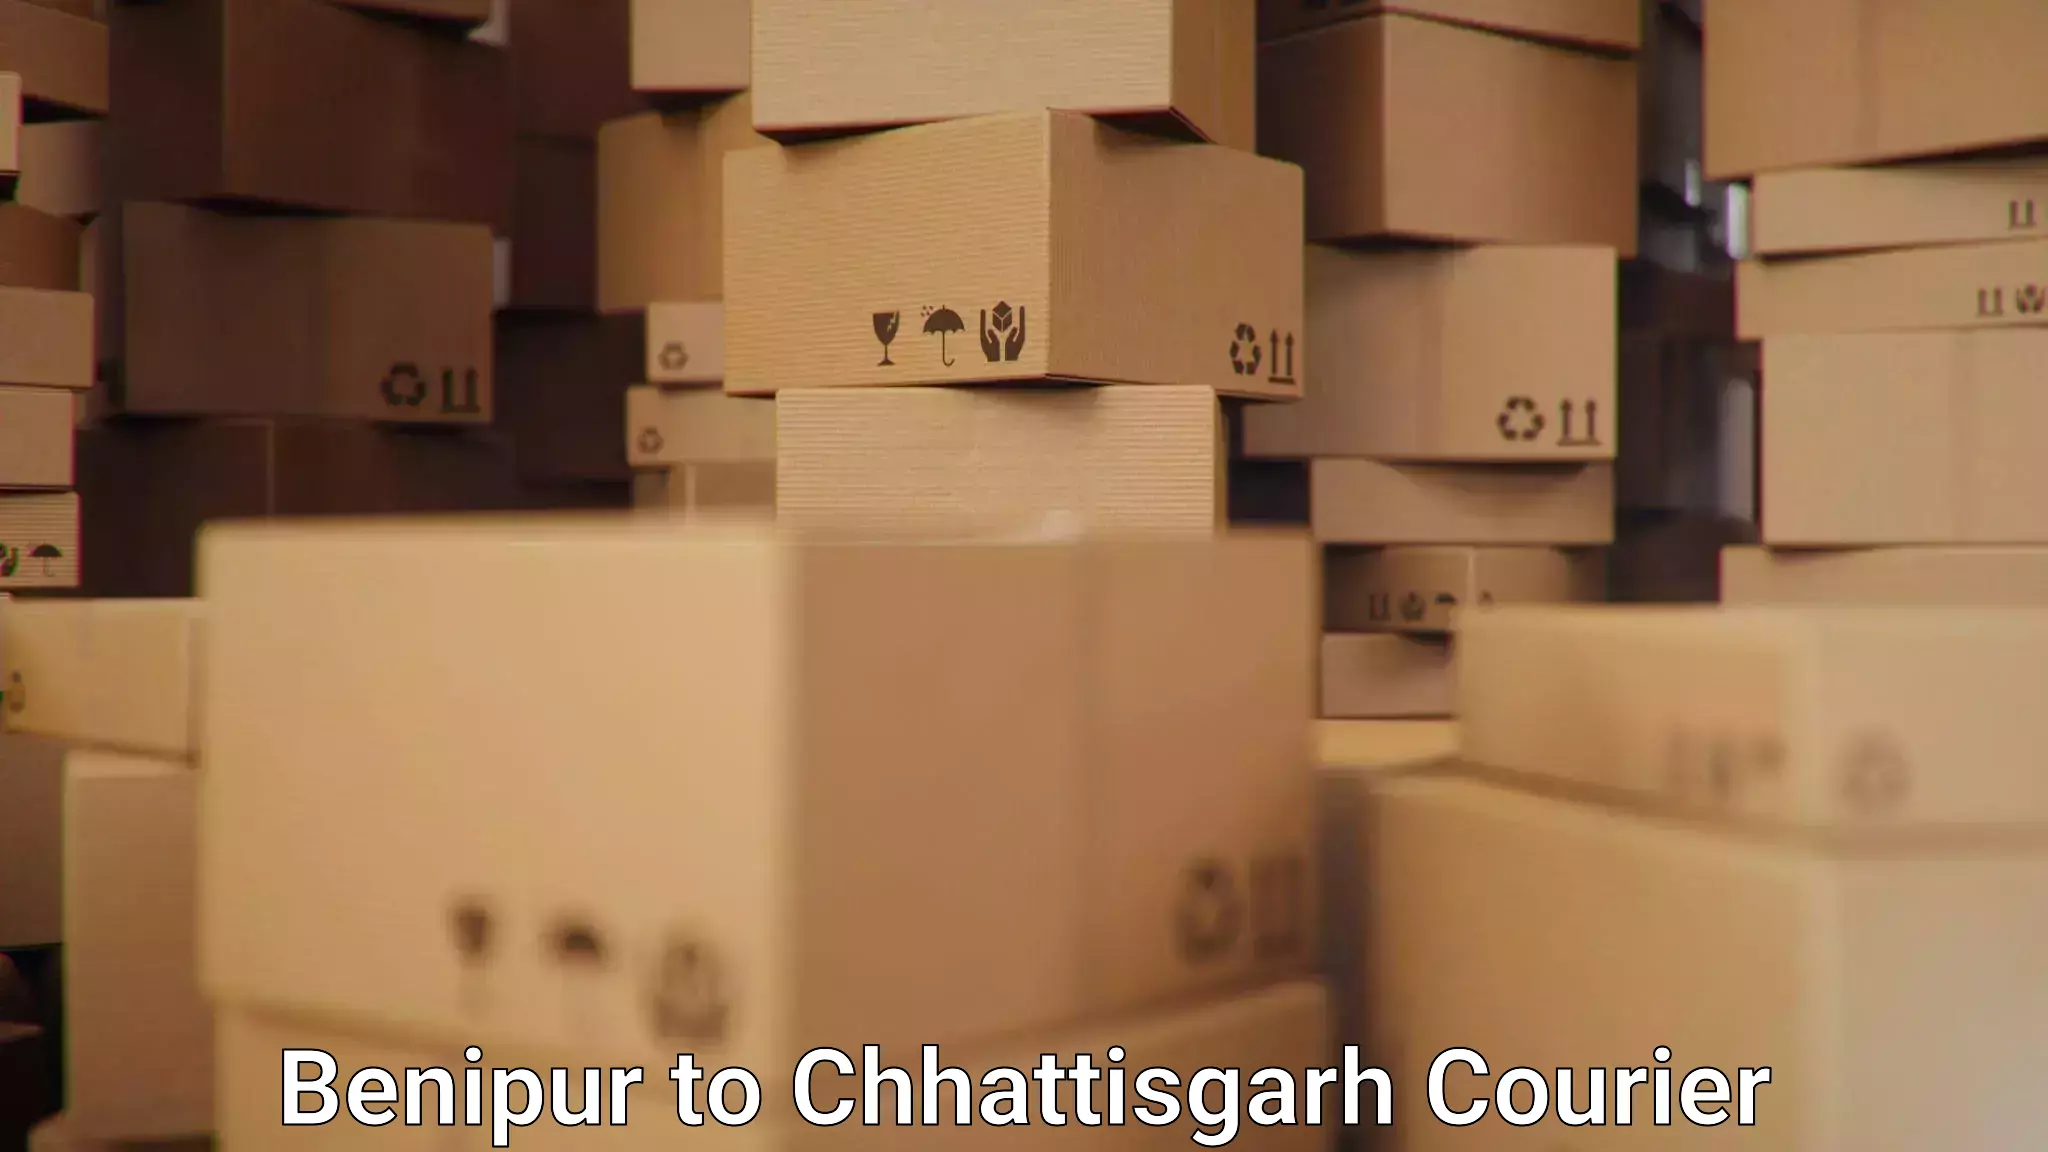 Efficient parcel service Benipur to Raipur